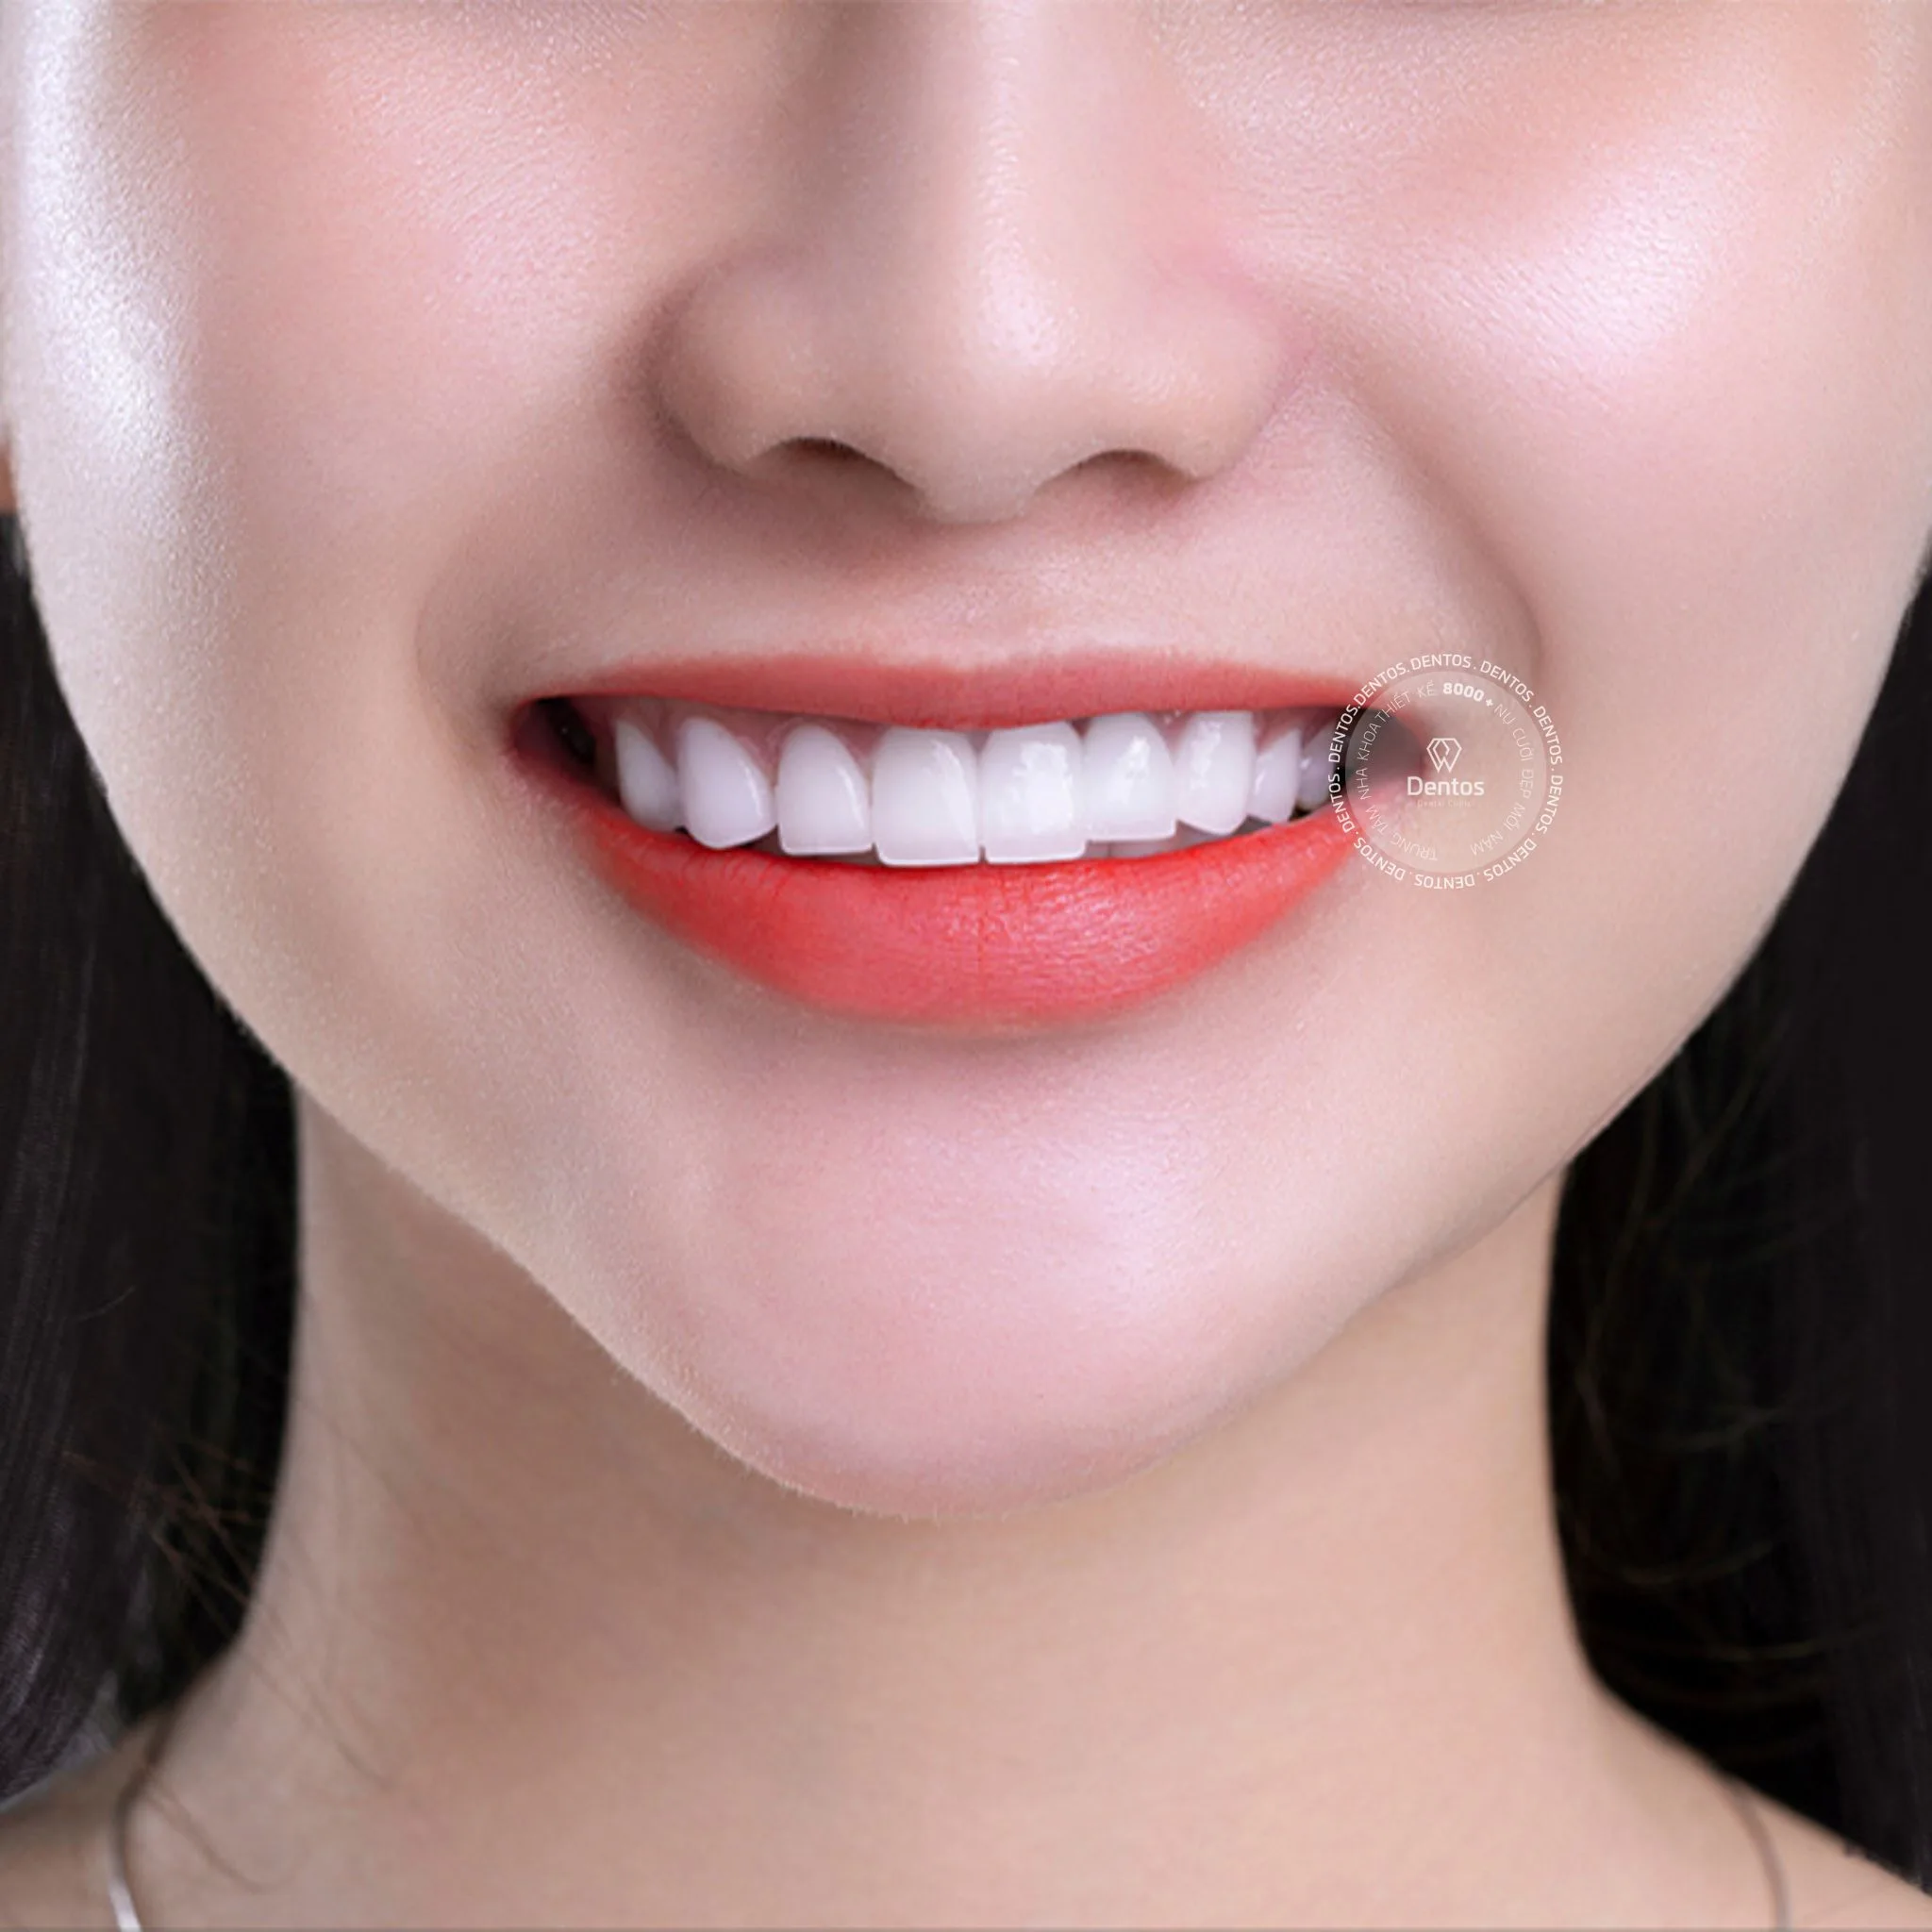 Giá răng sứ Zirconia Đức thường dao động từ 2 đến 5 triệu đồng mỗi răng